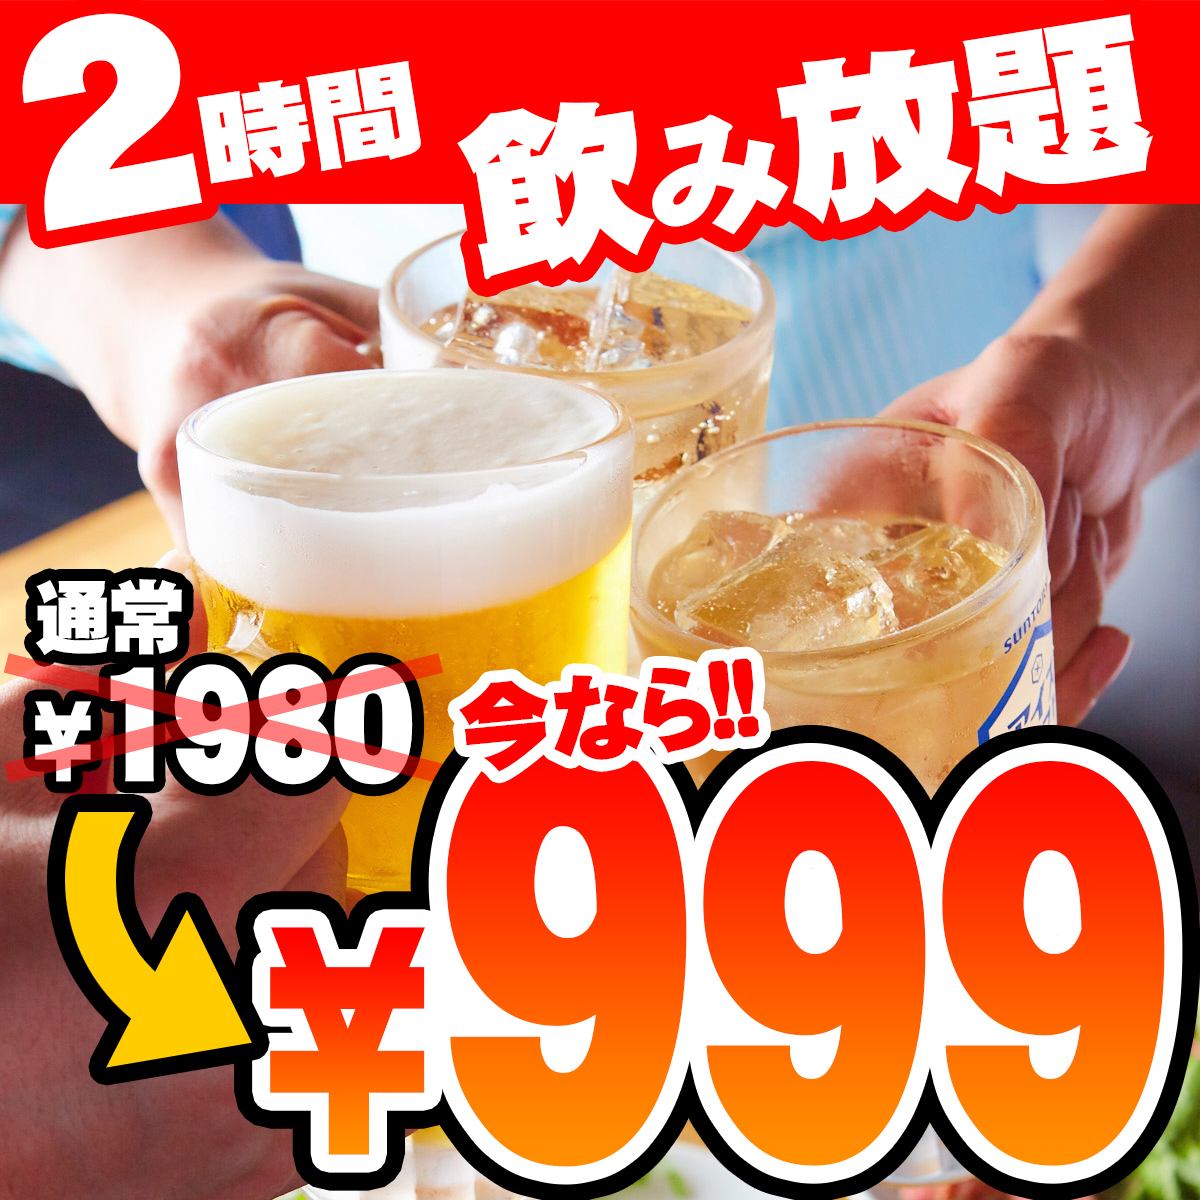 单独2小时无限畅饮1980日元⇒999日元（含税）！第二个派对也可以◎